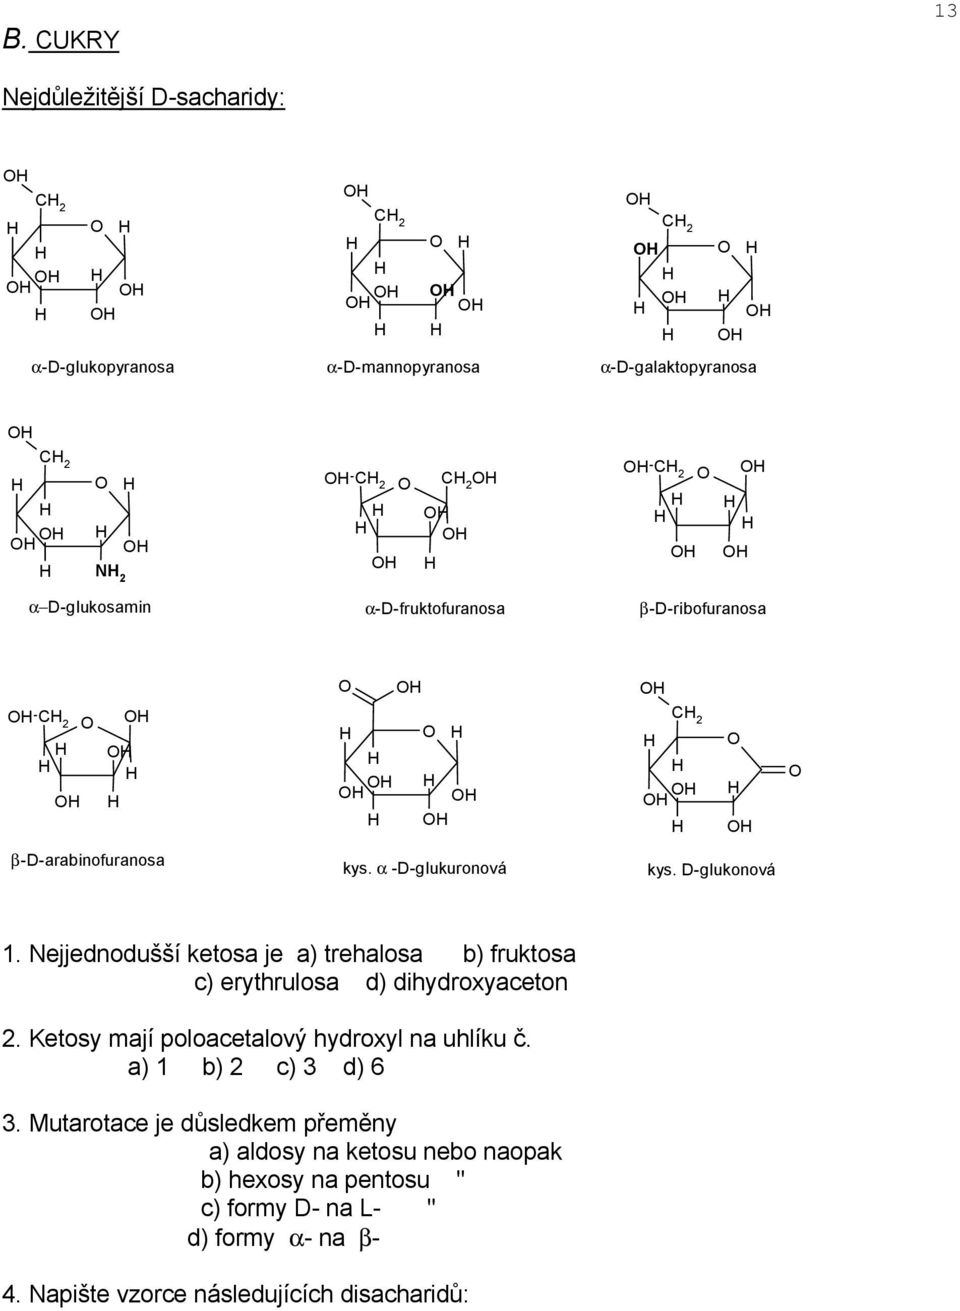 ejjednodušší ketosa je a) trehalosa b) fruktosa c) erythrulosa d) dihydroxyaceton 2. Ketosy mají poloacetalový hydroxyl na uhlíku č.